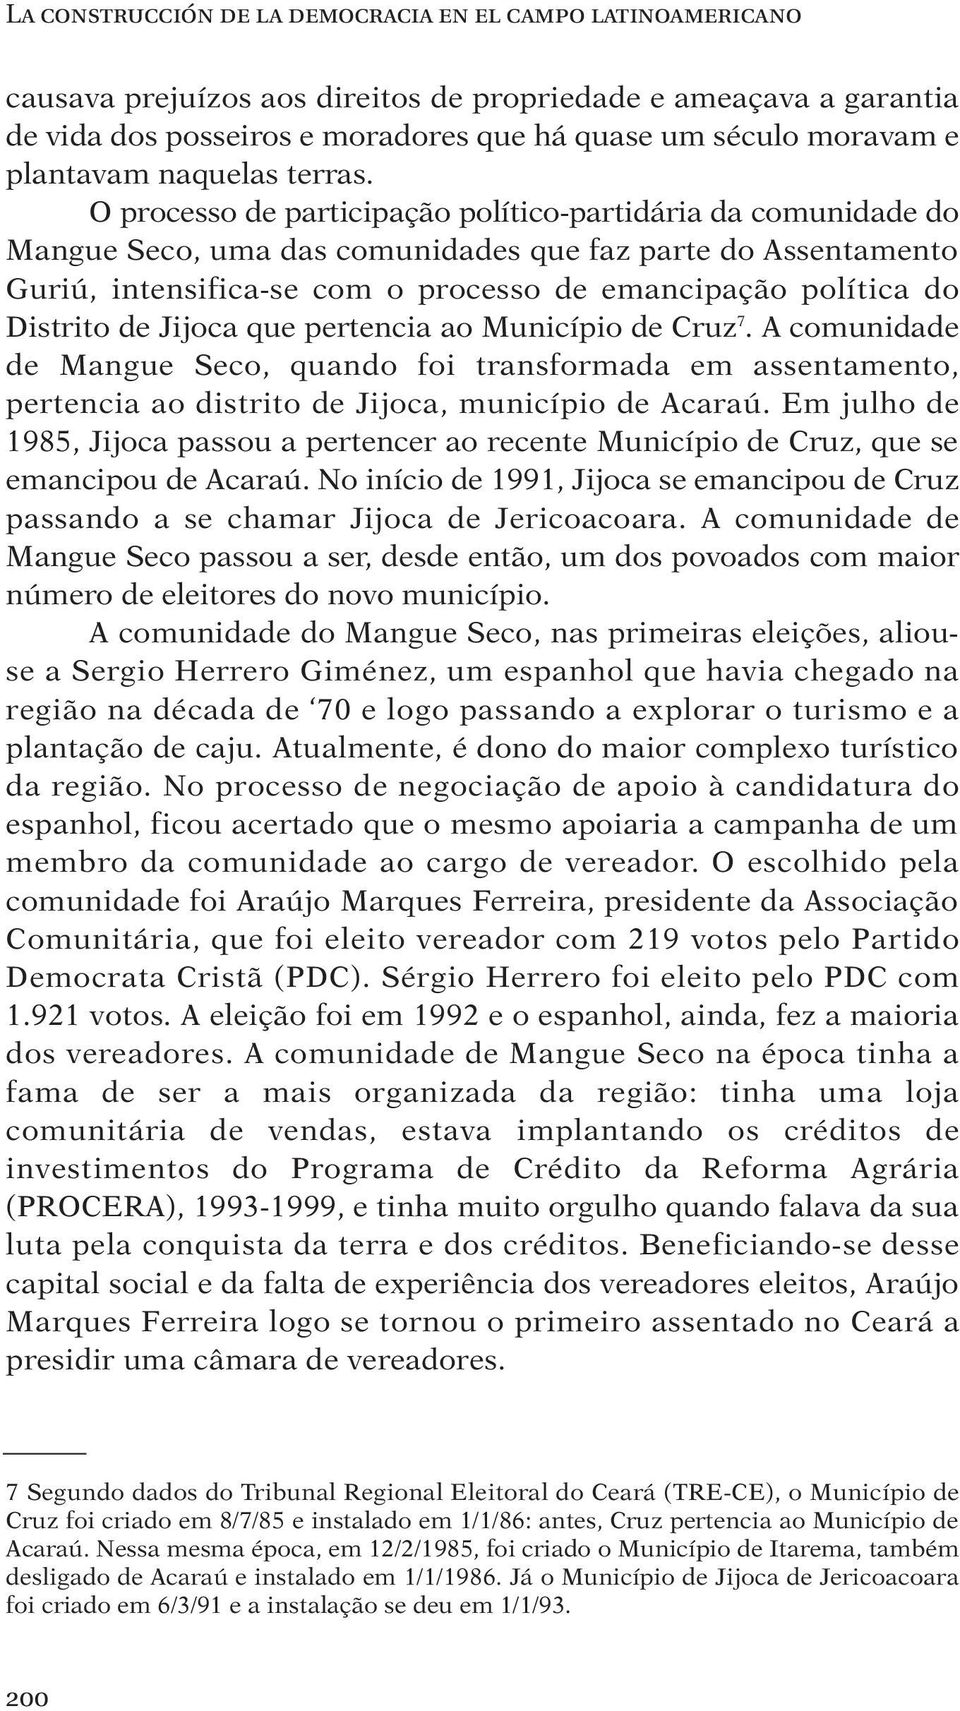 O processo de participação político-partidária da comunidade do Mangue Seco, uma das comunidades que faz parte do Assentamento Guriú, intensifica-se com o processo de emancipação política do Distrito